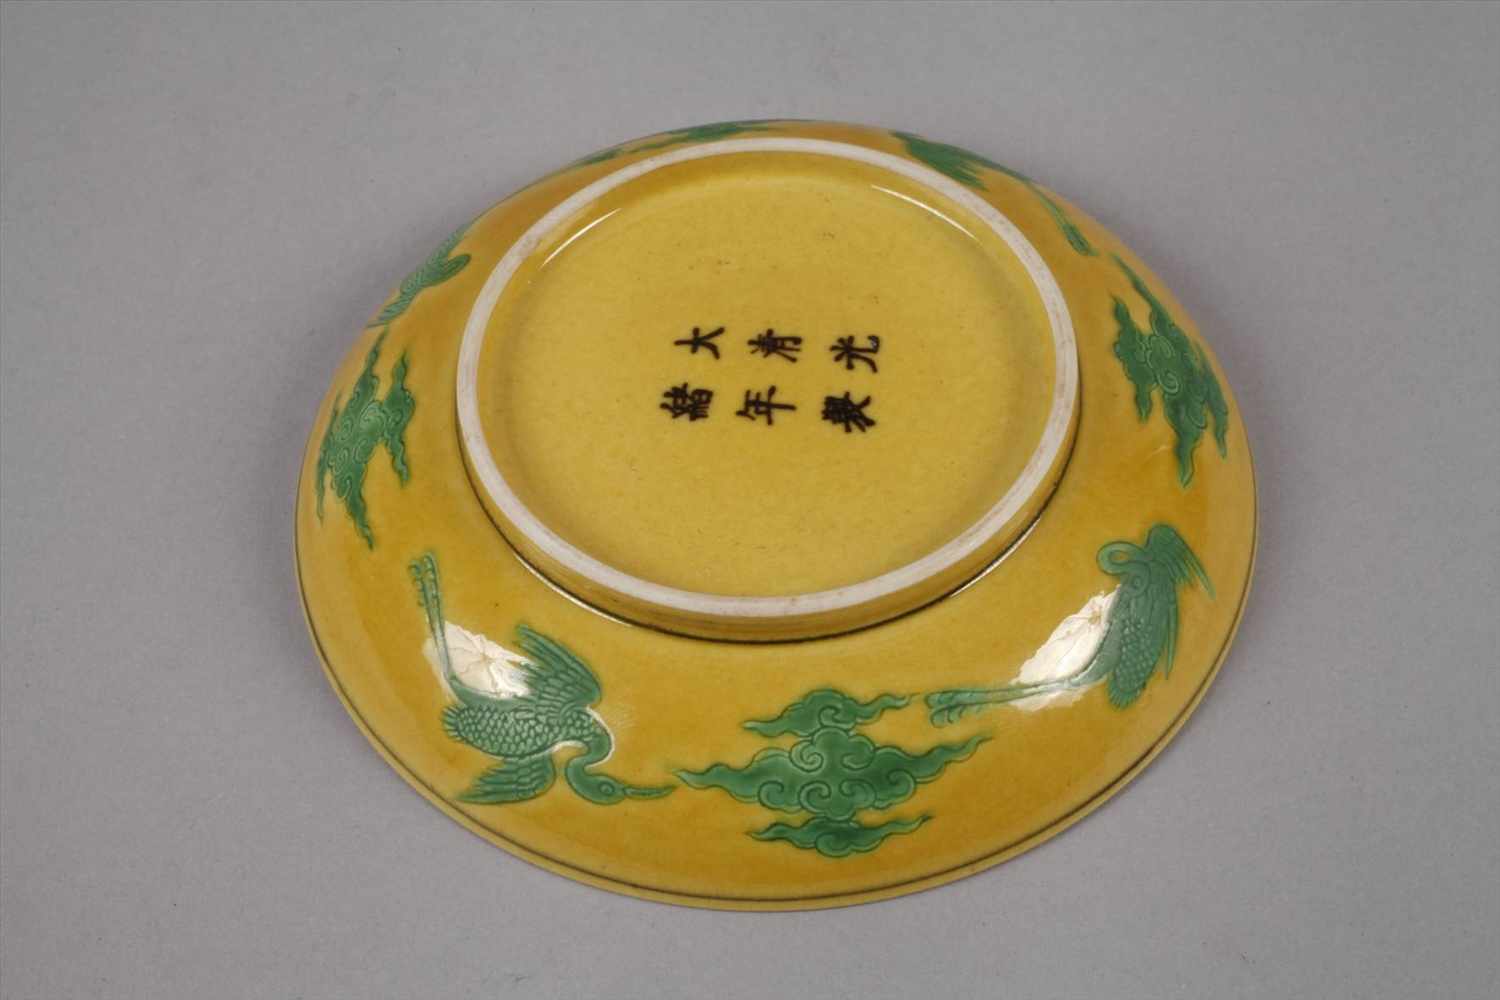 Zierteller Chinaum 1890, am Boden mit Sechs-Zeichen-Guangxu-Marke, gelbglasiertes Porzellan, grün- - Image 2 of 5